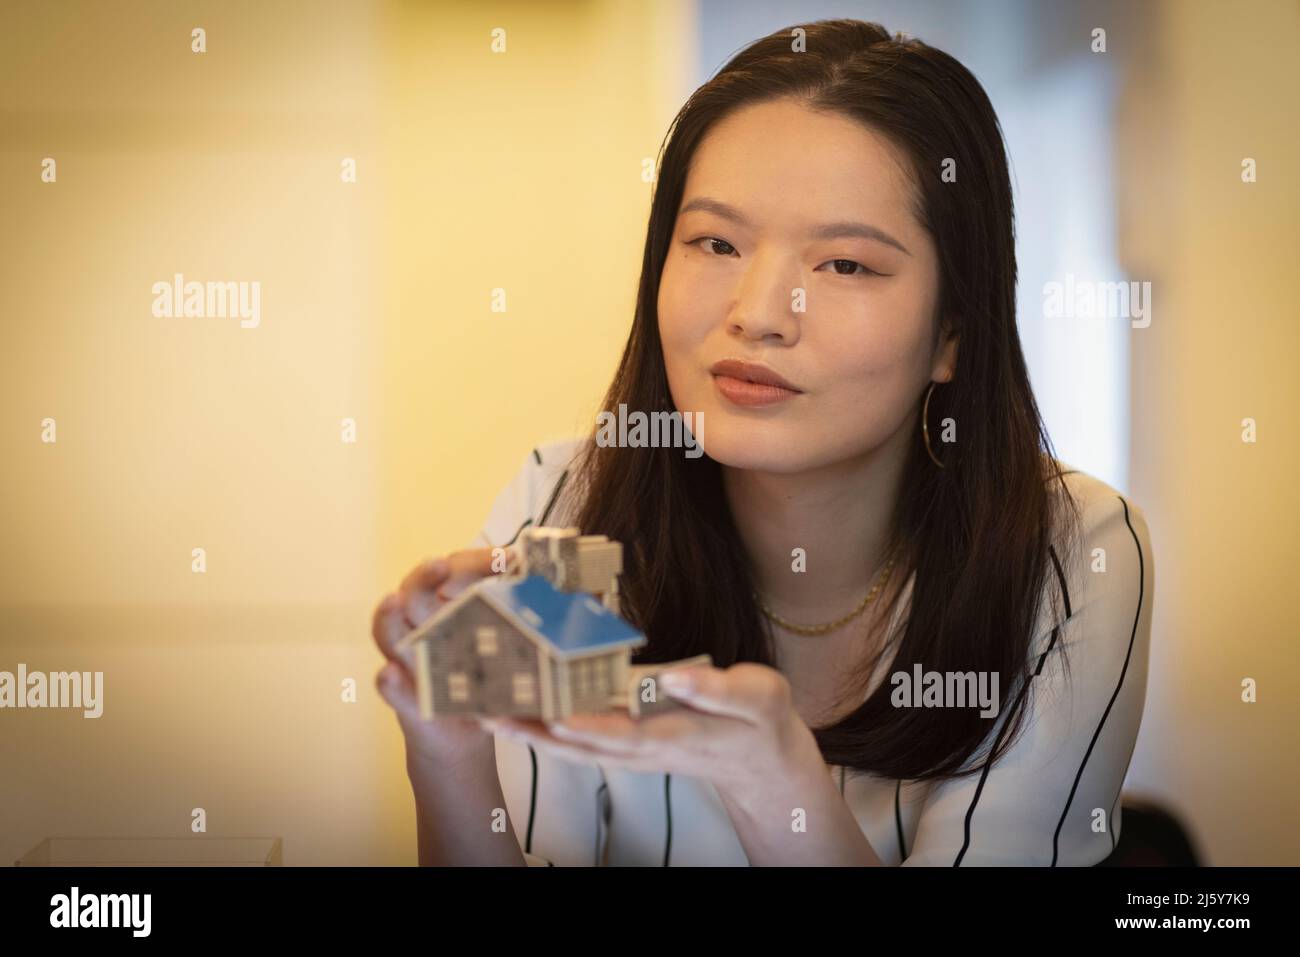 Portrait confident female architect holding tiny house model Stock Photo